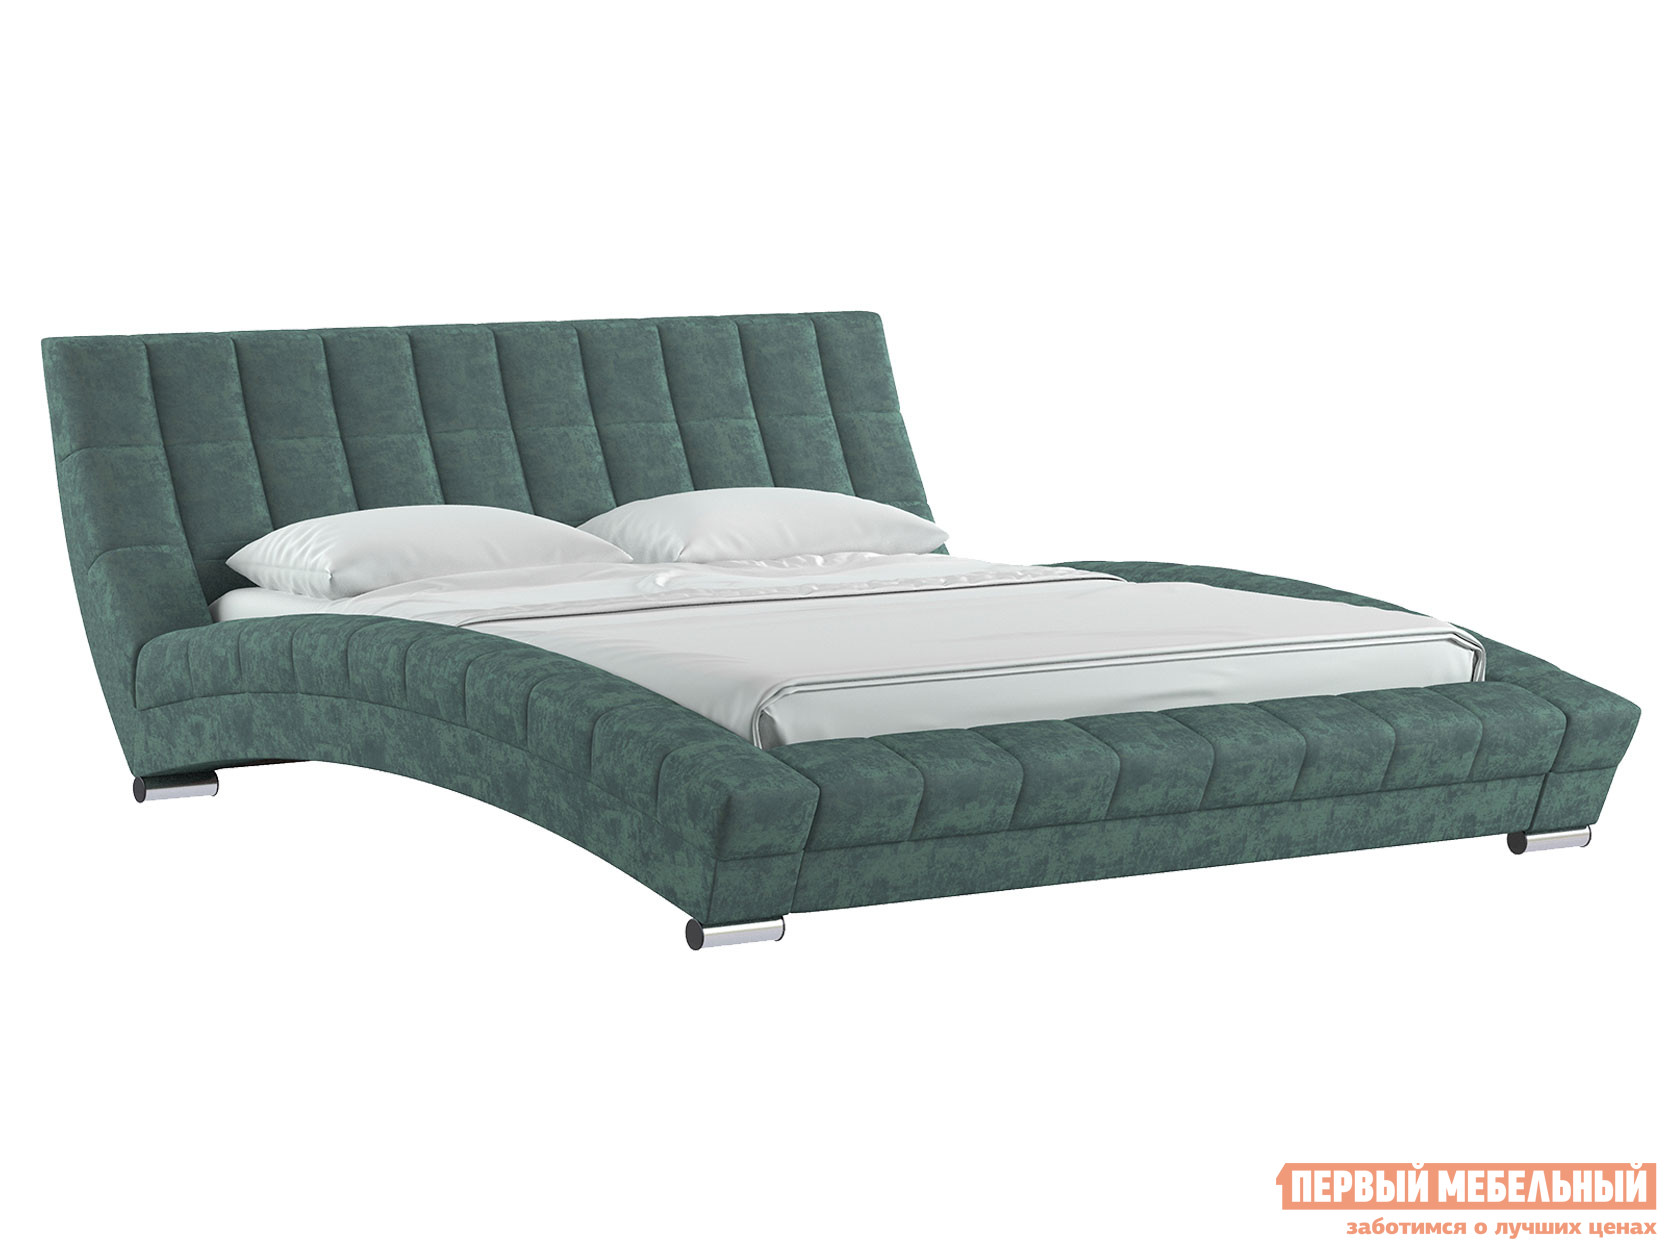 Двуспальная кровать  Кровать Оливия Ментоловый, велюр, 1600 Х 2000 мм